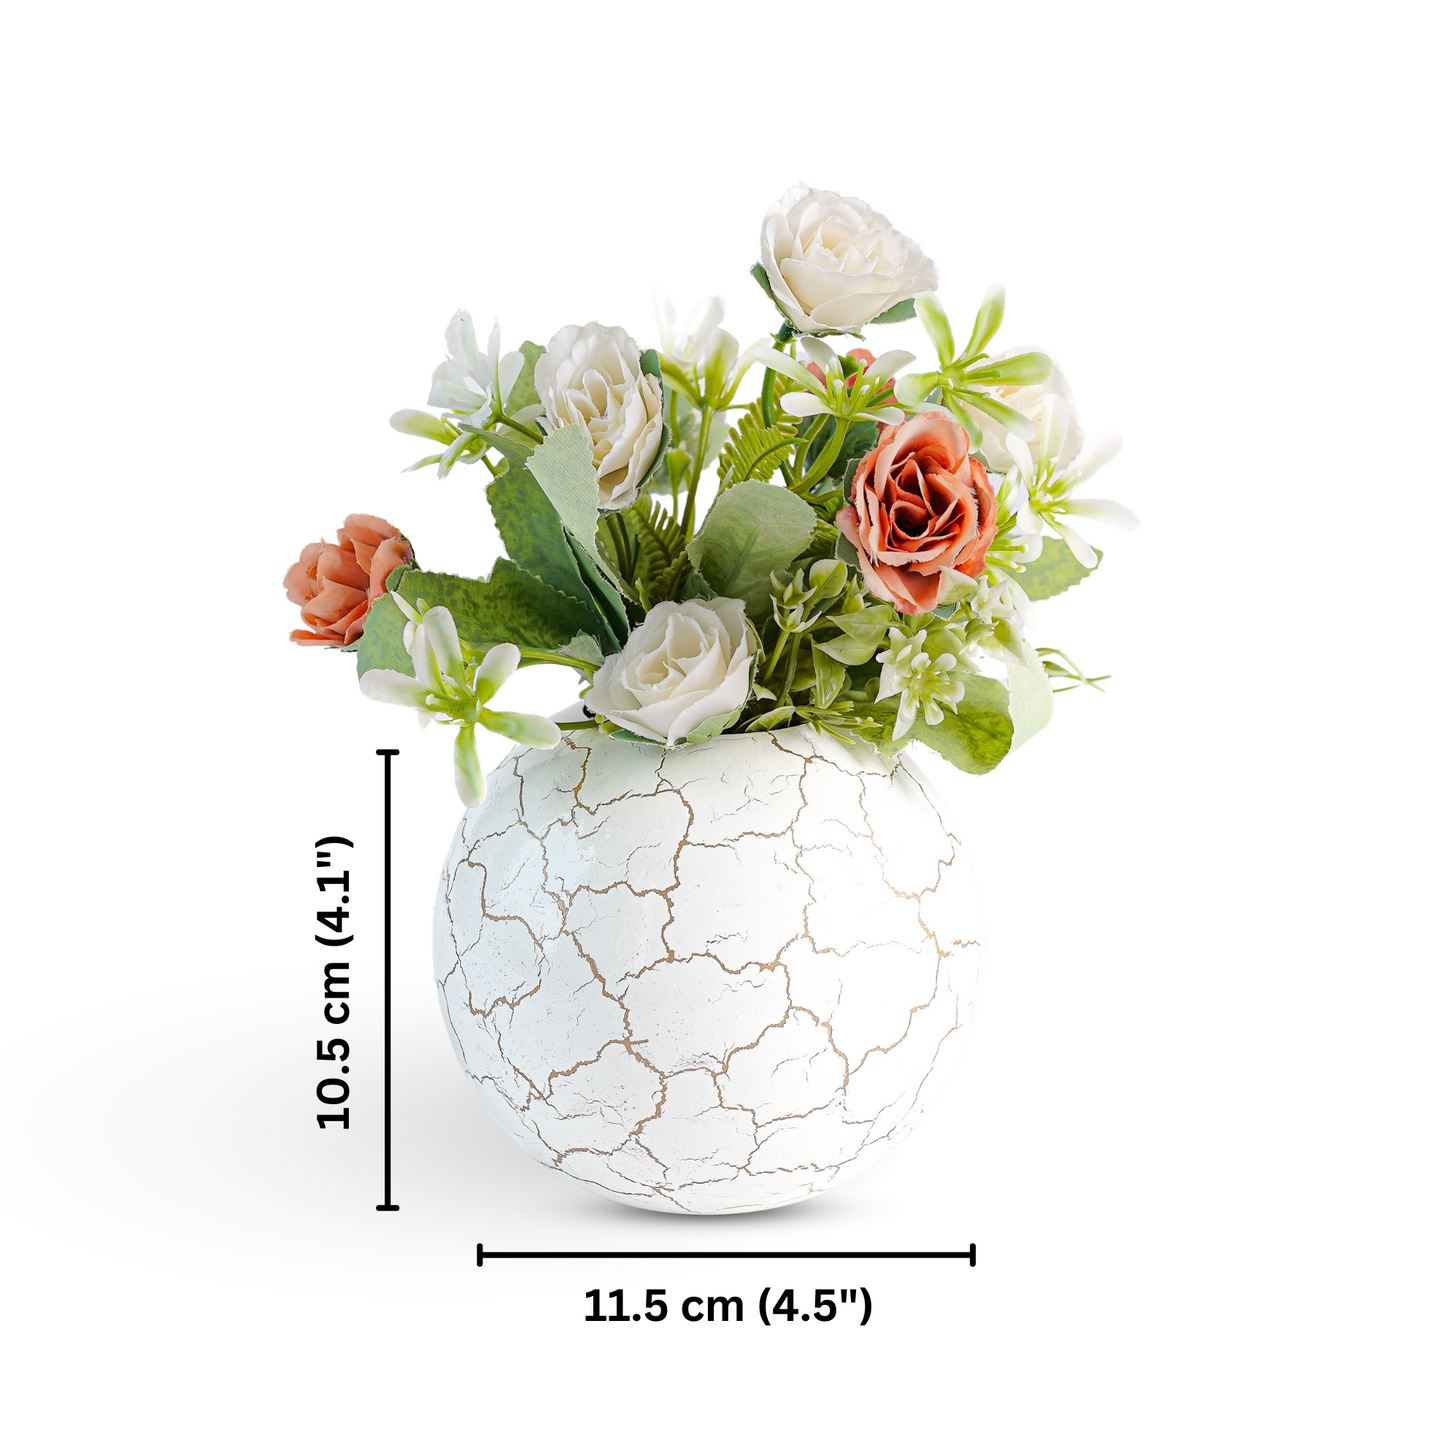 Crackled Ball flower vase Small